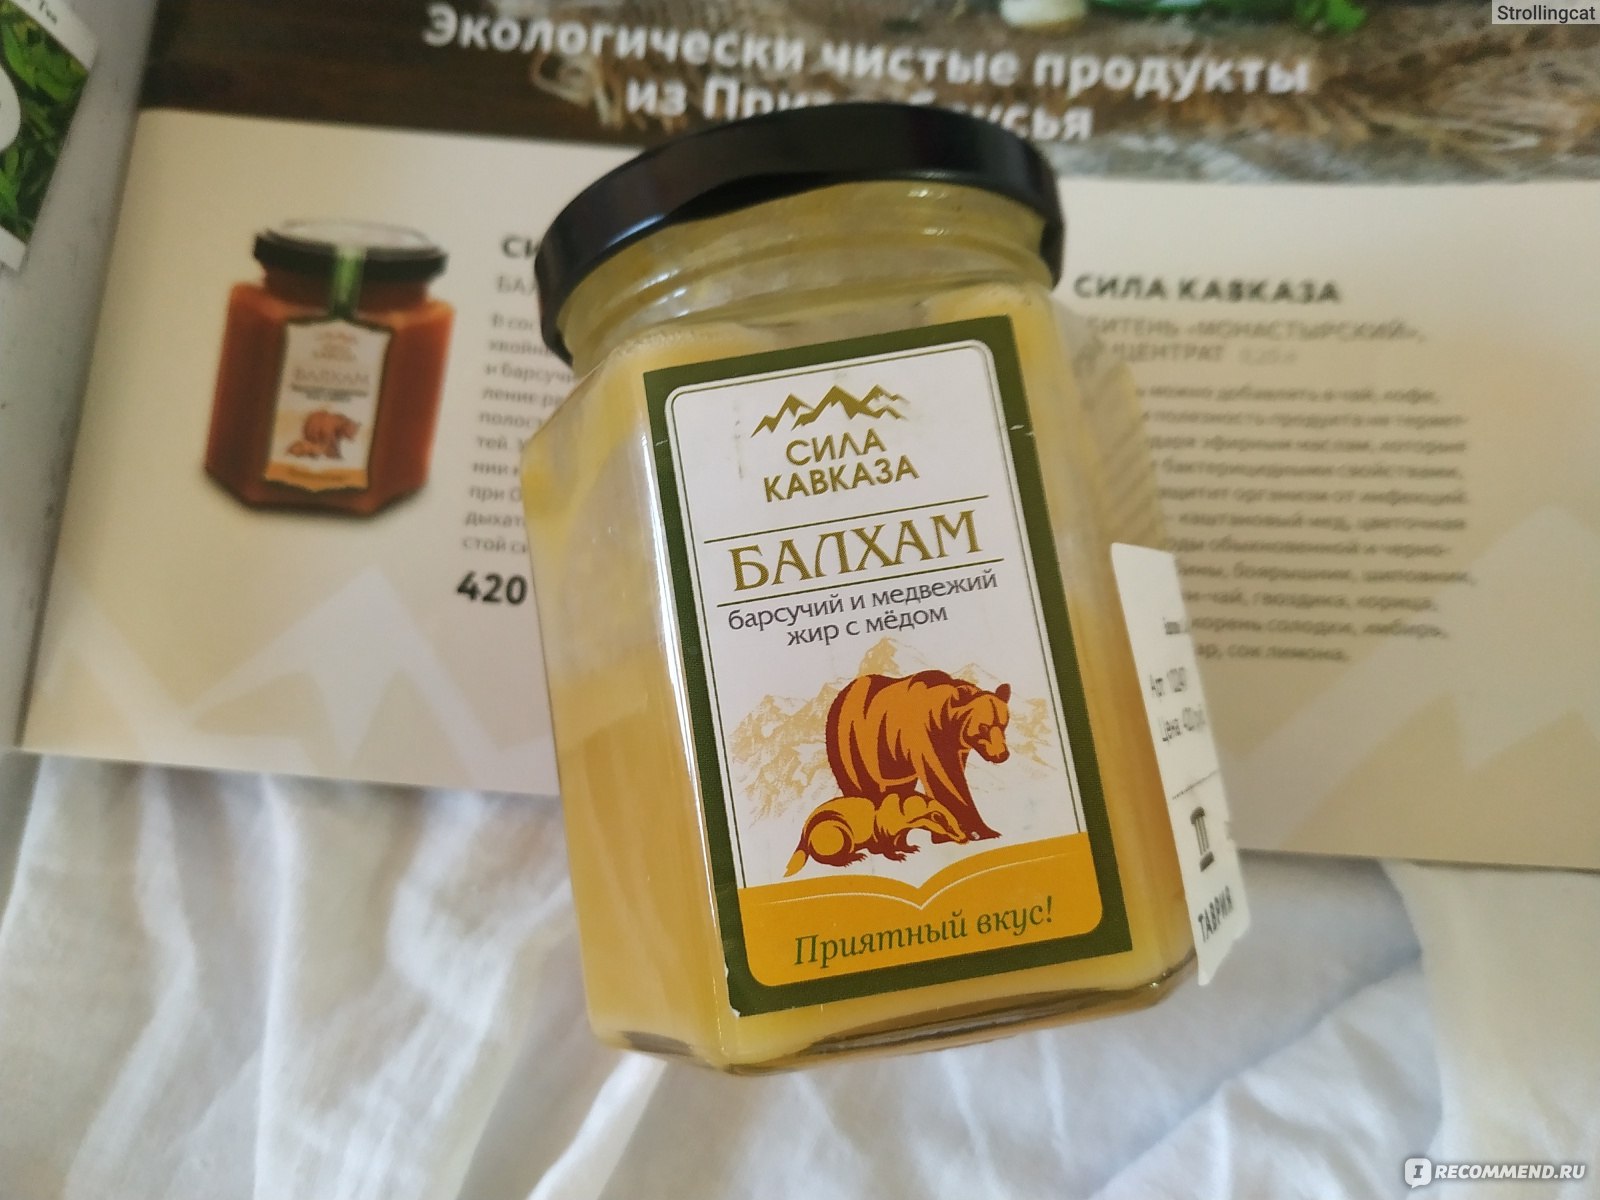 Балхам состав. Сила Кавказа Балхам барсучий и Медвежий жир с медом. Балхам. Балхам лекарство. Балхам барсучий и Медвежий жир с медом.